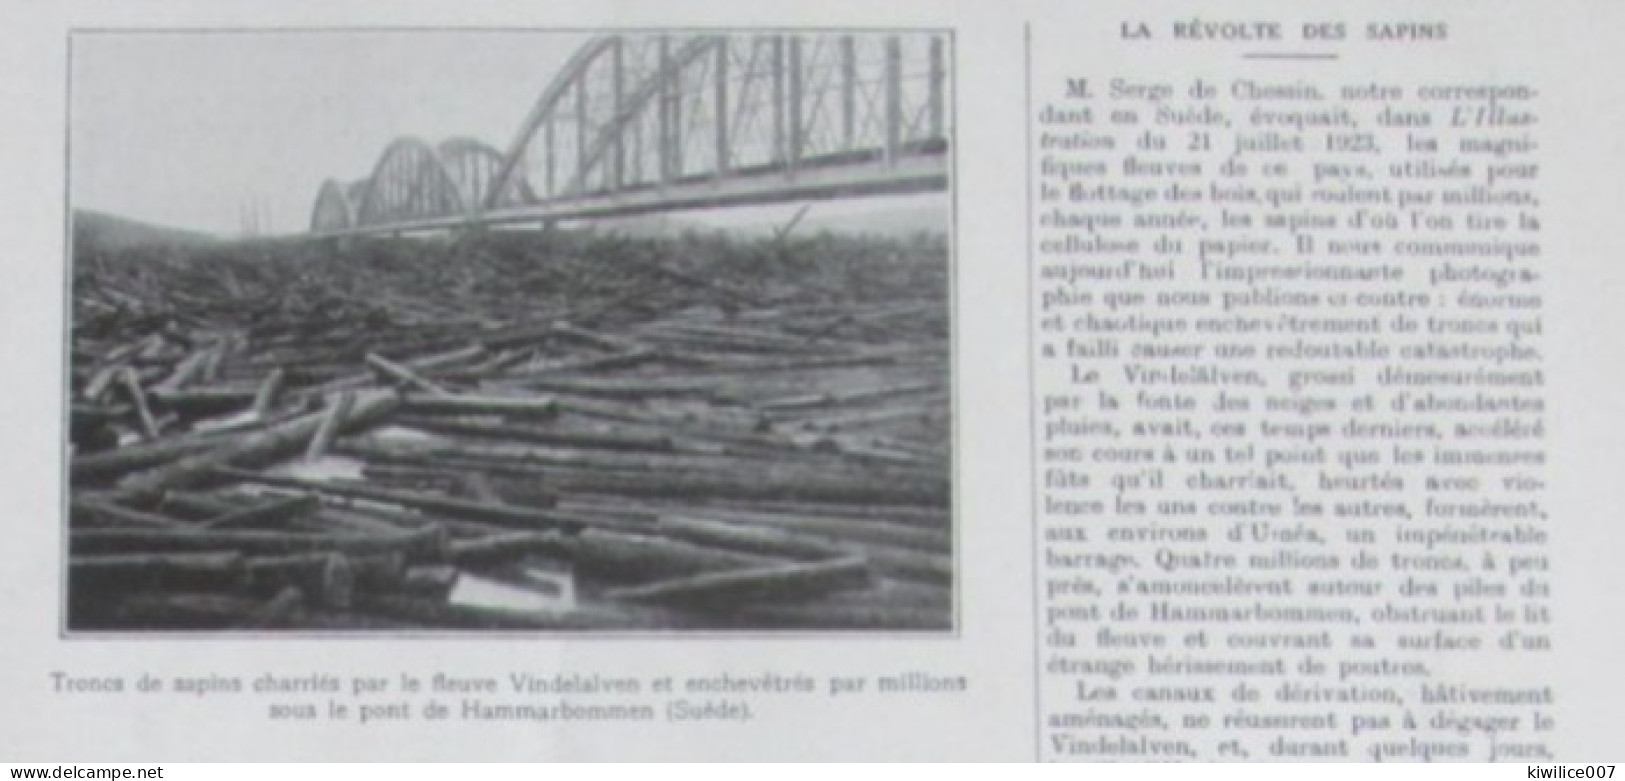 1924  Suede Sweden   Hammarbommen  Pont  Bridge  TRONCS DE SAPINS BOIS BUCHERONNAGE - Non Classés